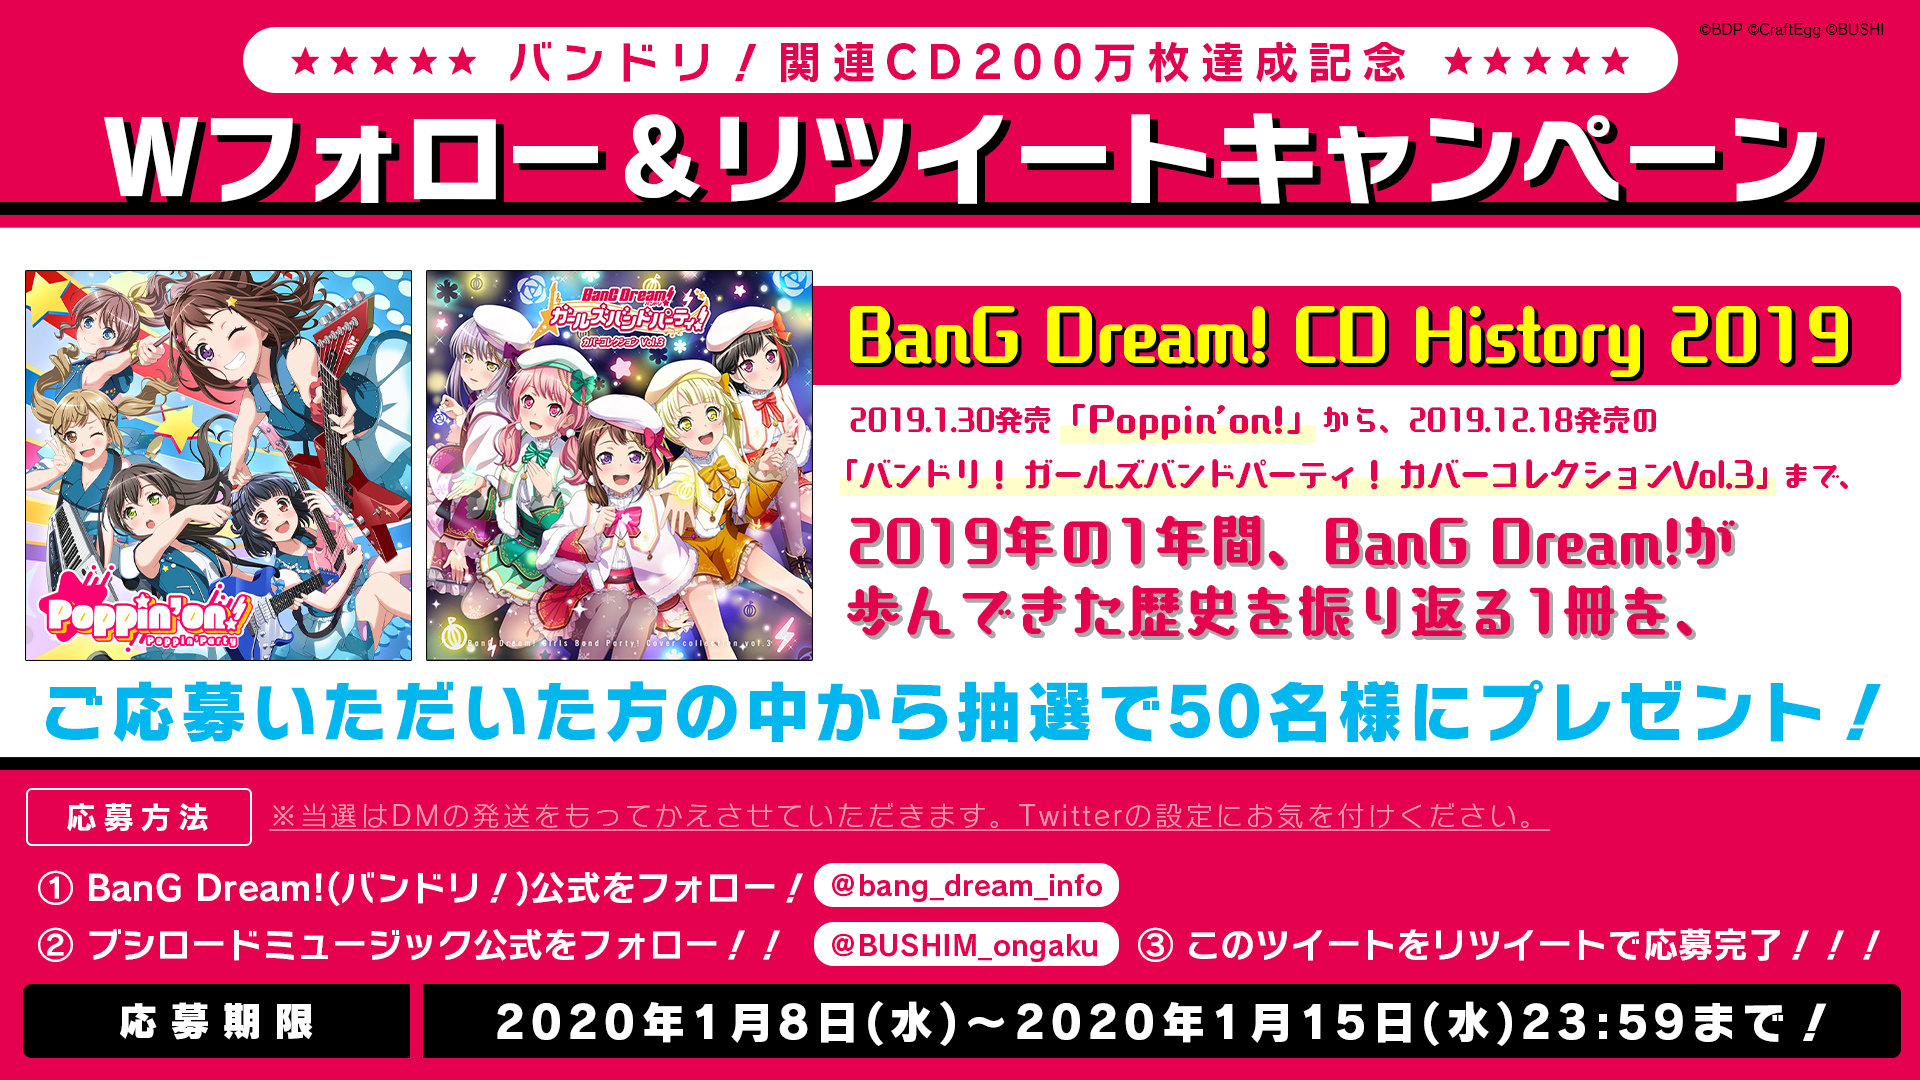 キャンペーン告知 (c)BanG Dream! Project